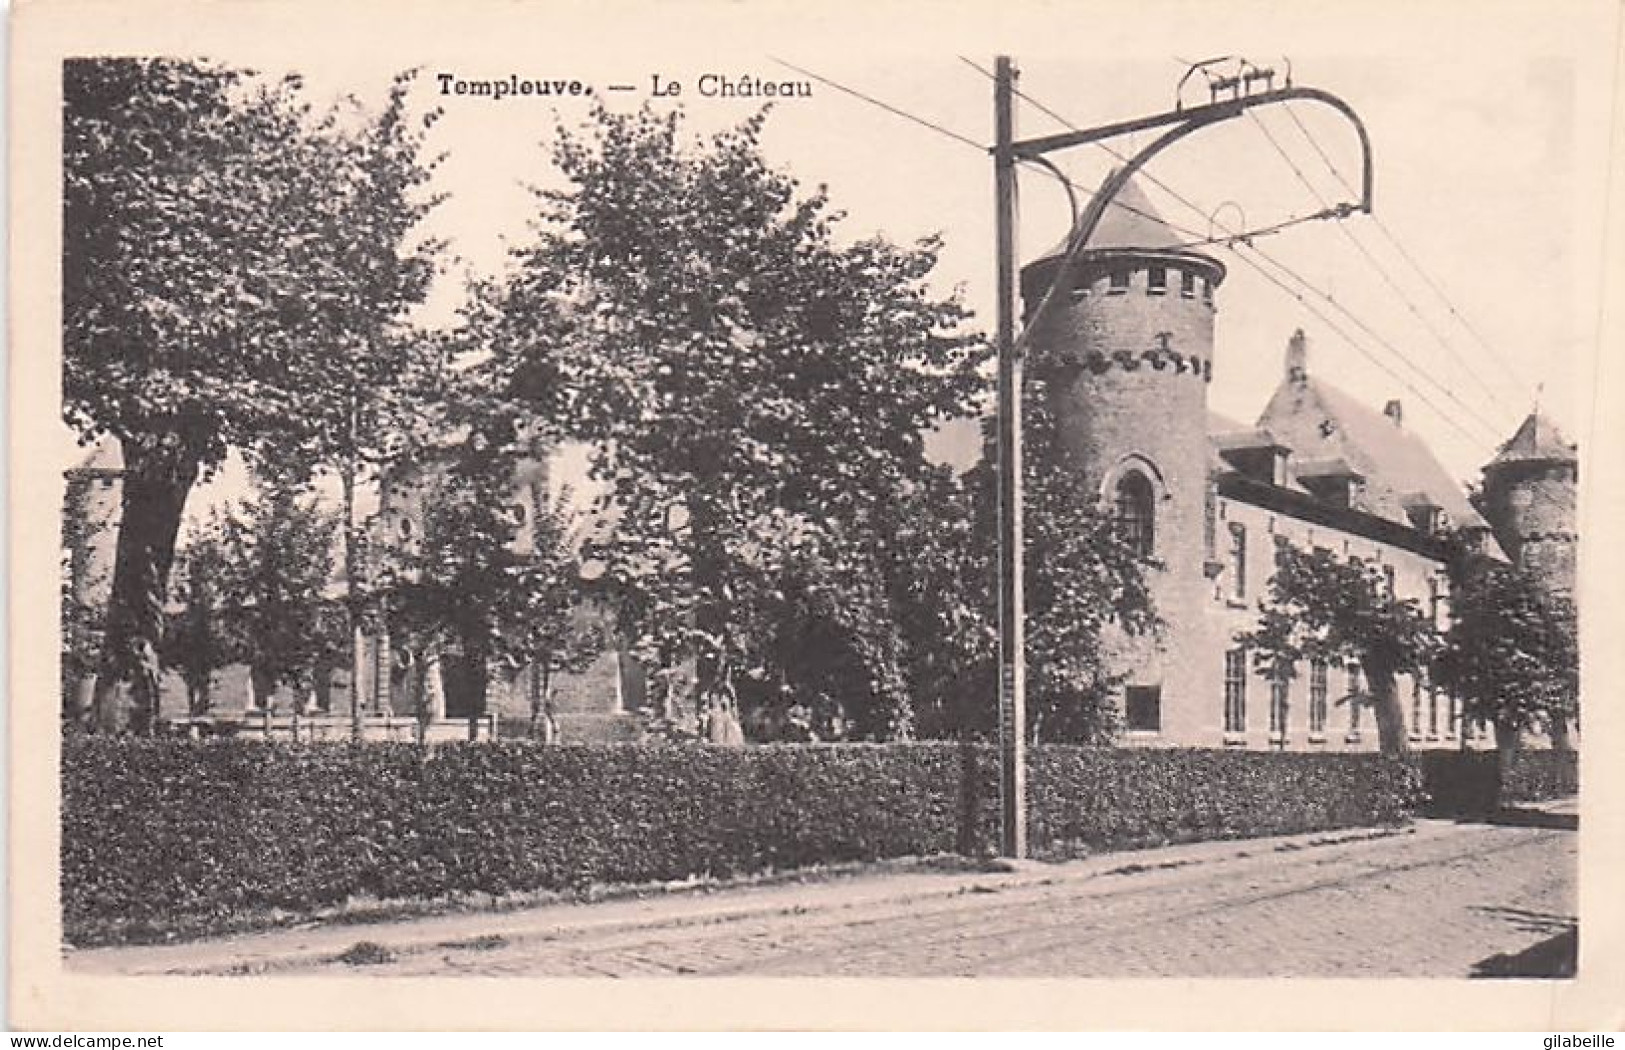  Tournai - TEMPLEUVE - Le Chateau  - Tournai